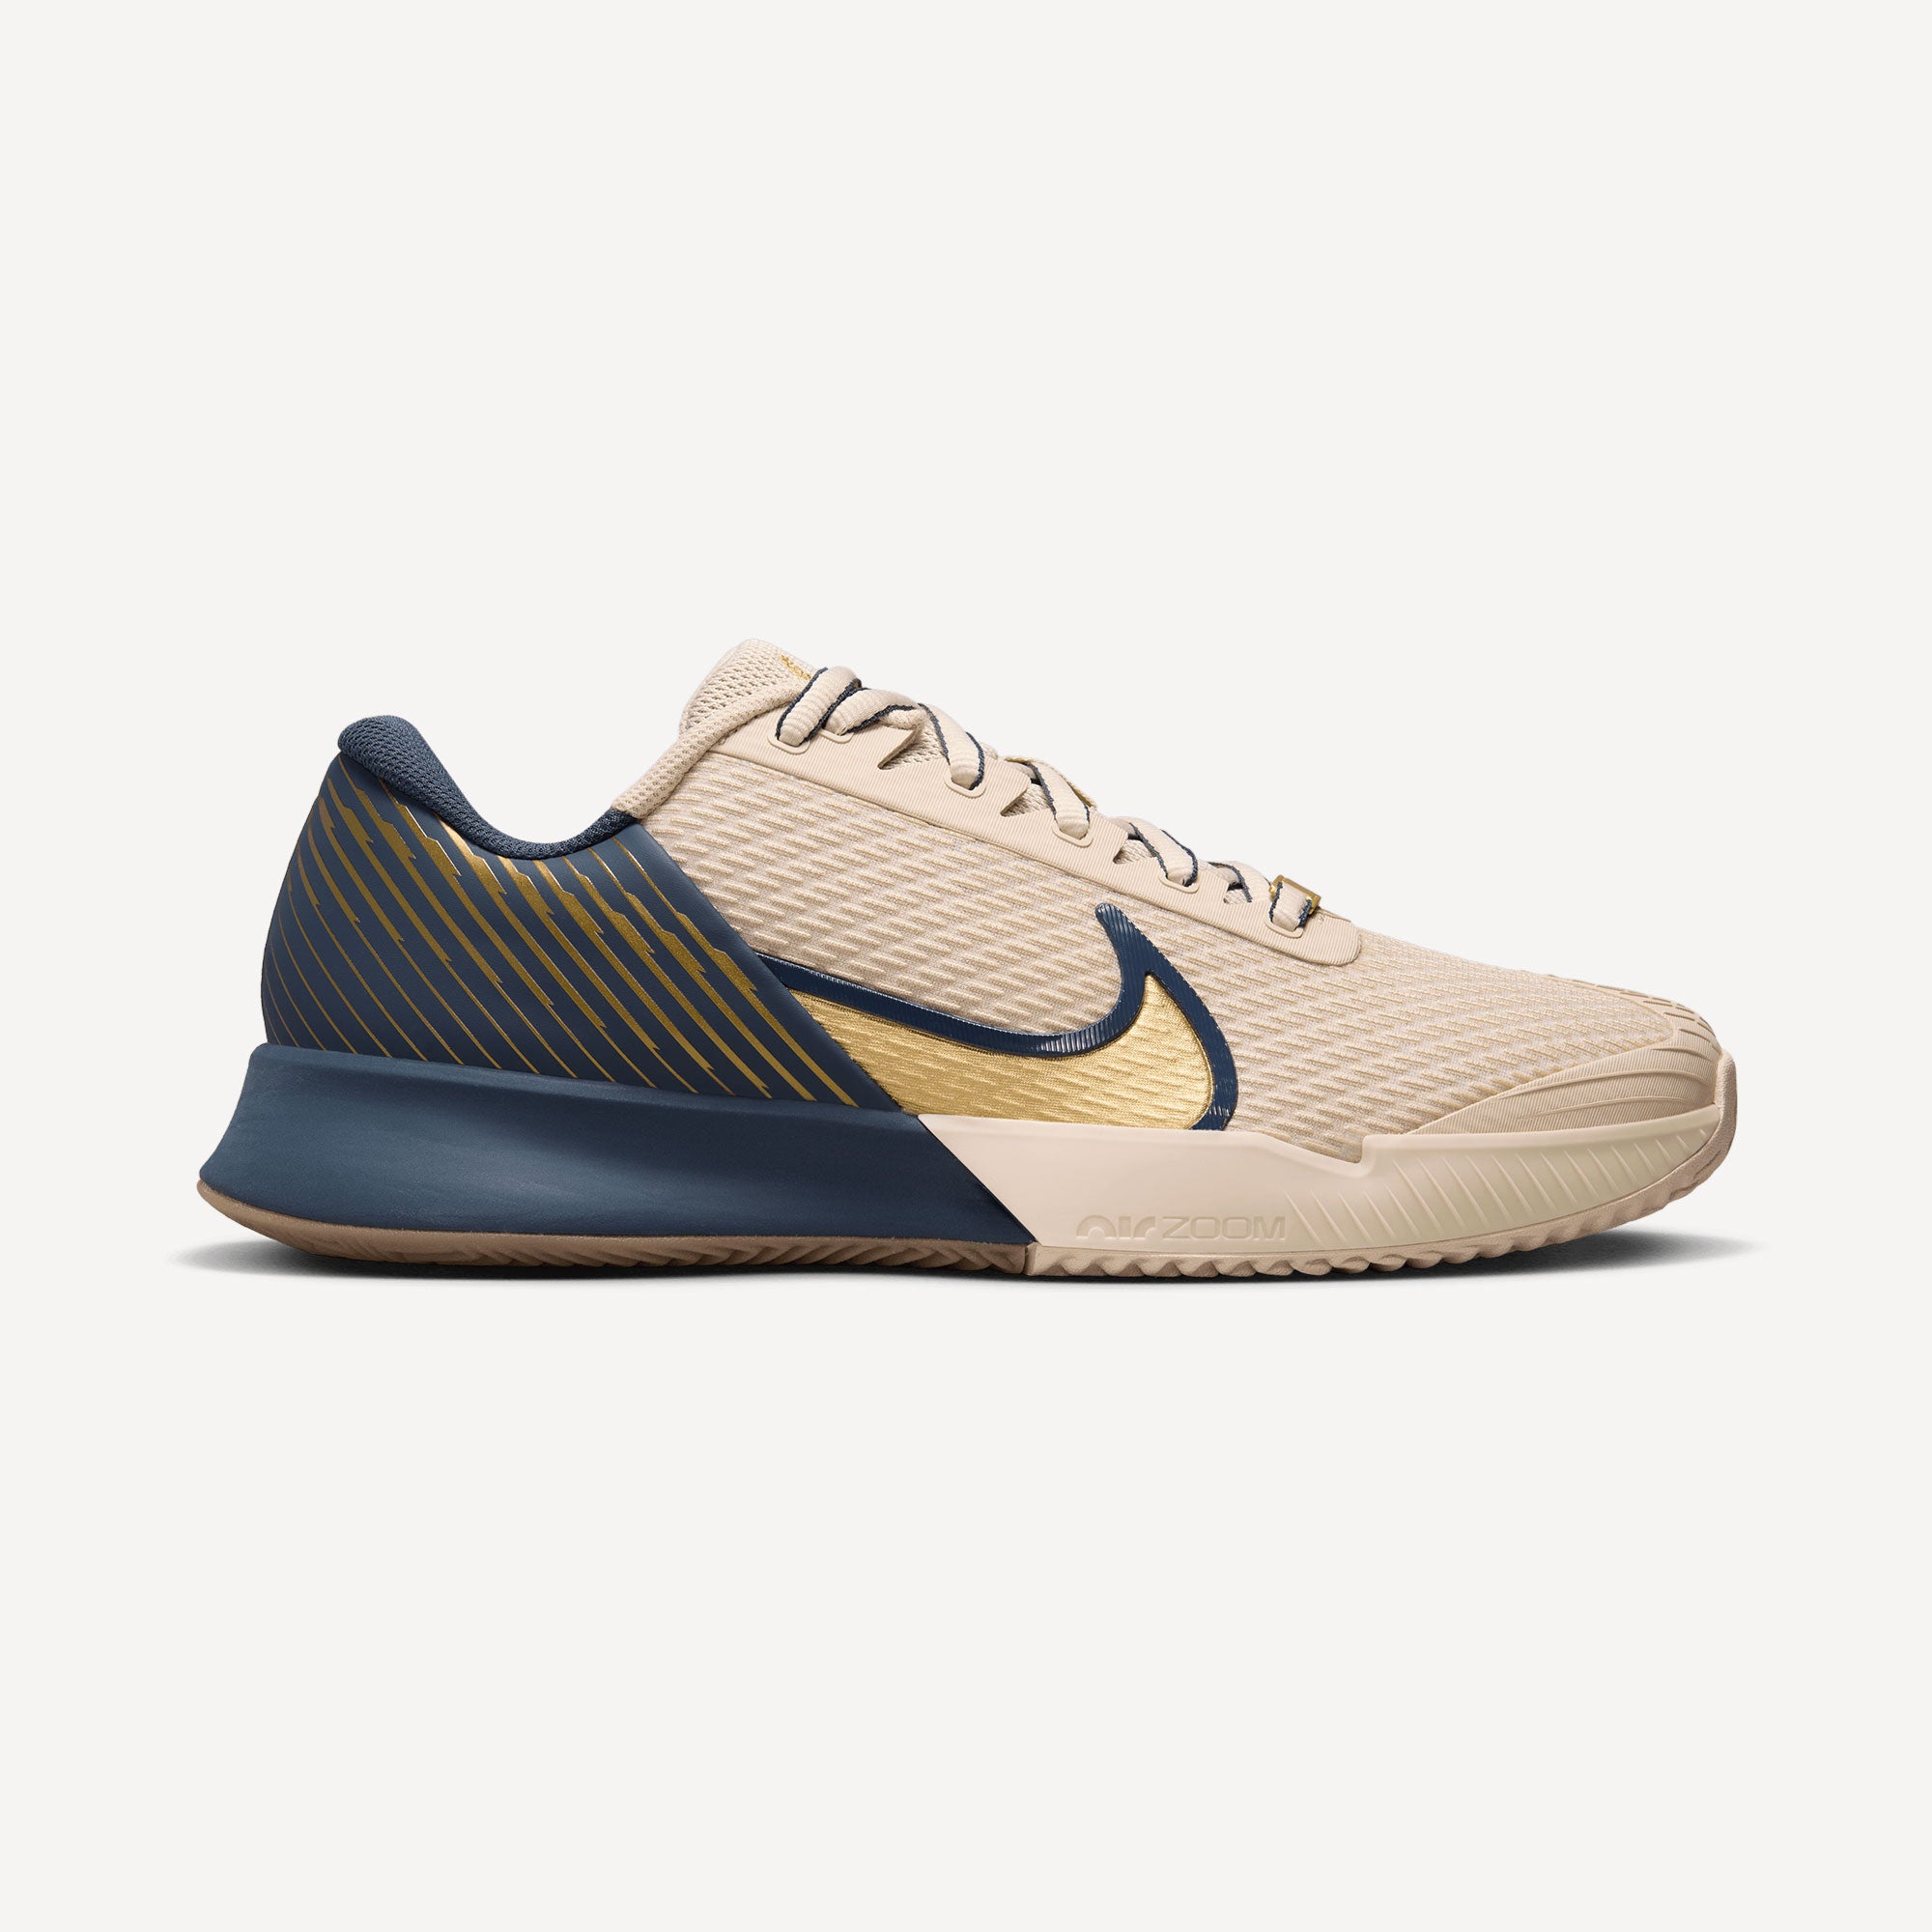 NikeCourt Air Zoom Vapor Pro 2 Premium Men's Clay Court Tennis Shoes - Sand (1)